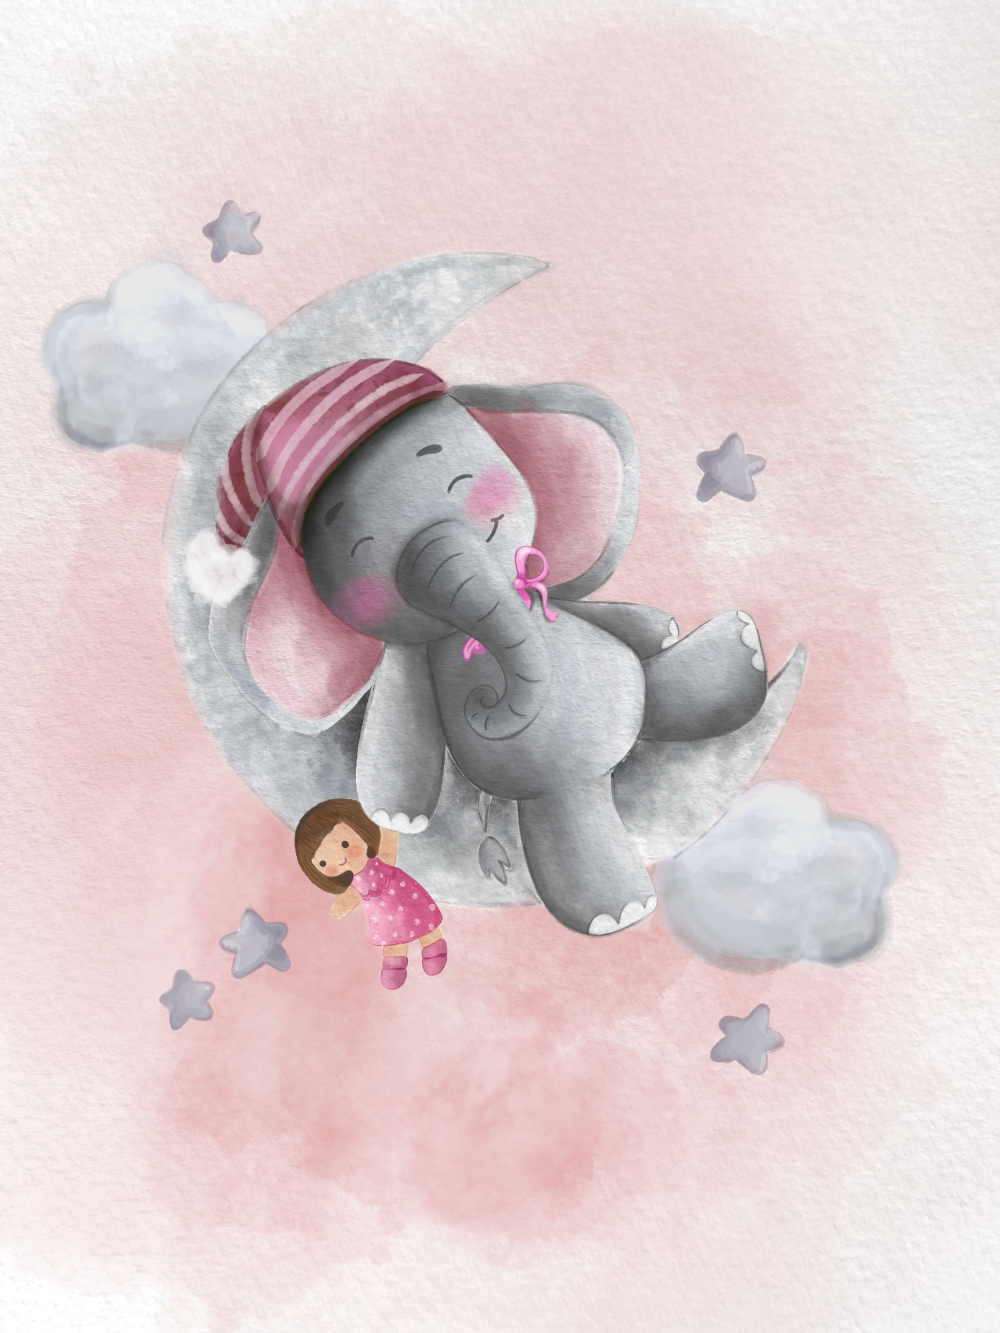 Originální dárek k narození dítěte, miminka, obraz slon na měsíci s čepičkou, mašlí a plyšákem, růžový na plakátu | ZivotniOkamziky.cz